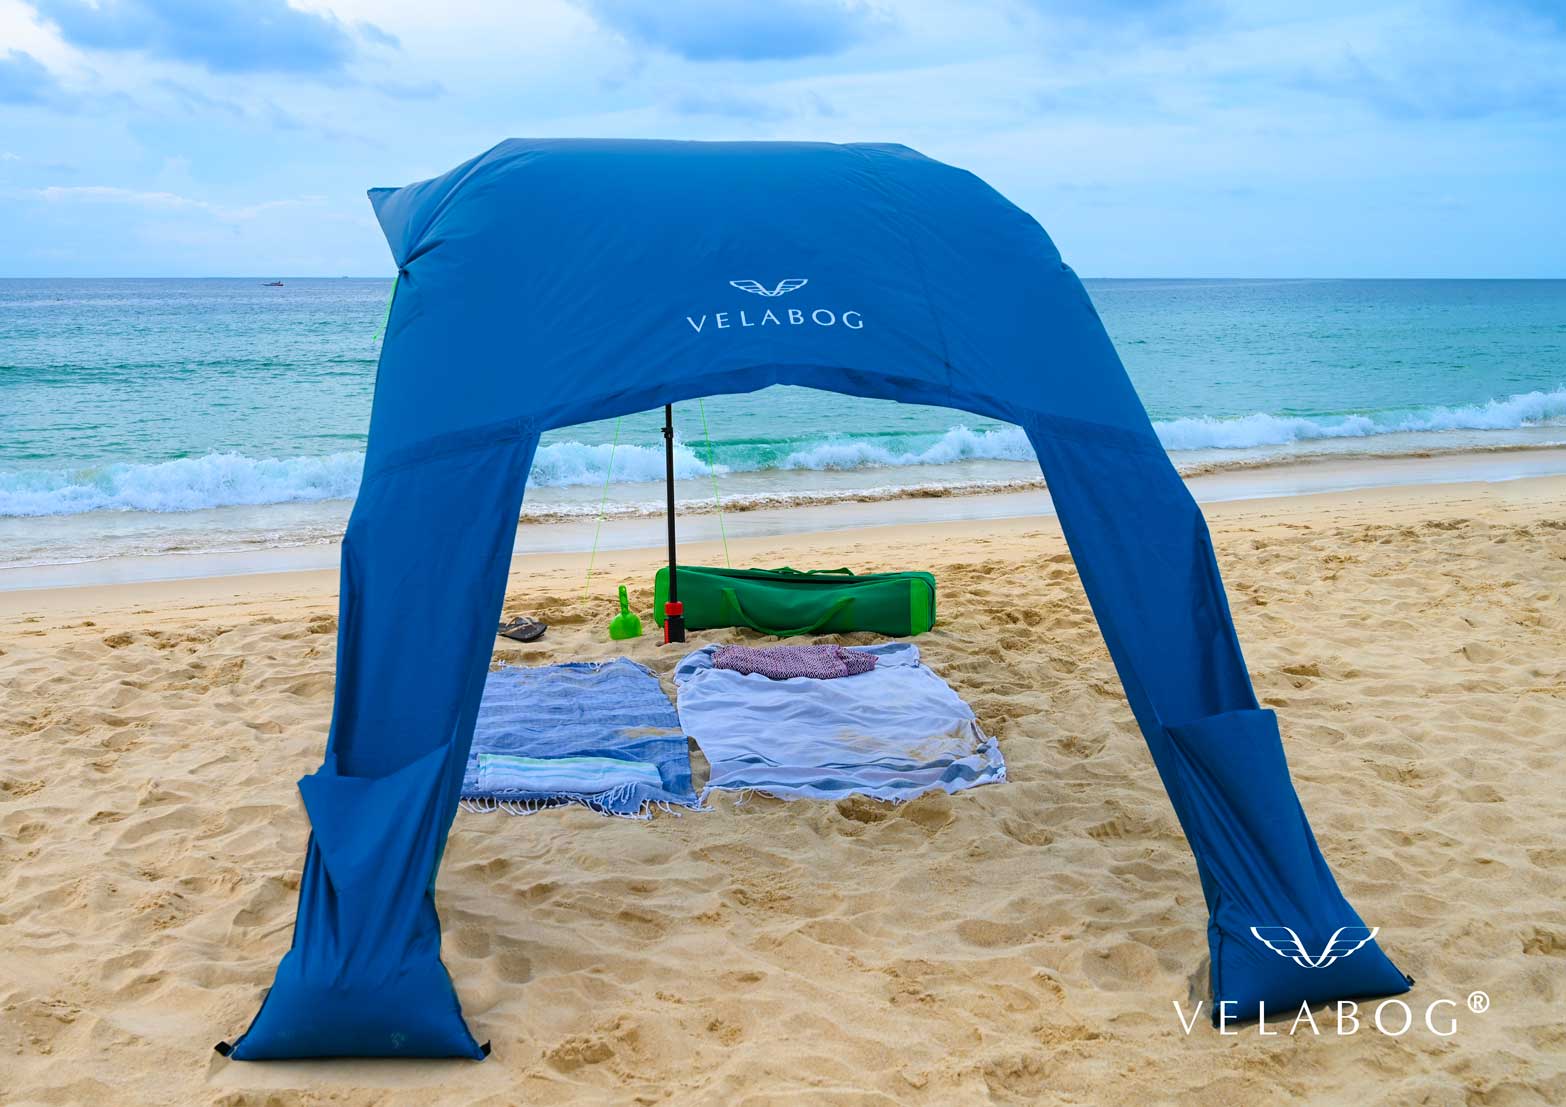 Toldo playa Velabog Breeze azul. La mejor refugio y protección solar en la playa, alto y ventilado. Mucha más sombra en comparación con sombrillas de playa. Mucho más aire en comparación con carpas de playa. Opción de montaje desde viento ligero a fuerte. Vista desde atrás.